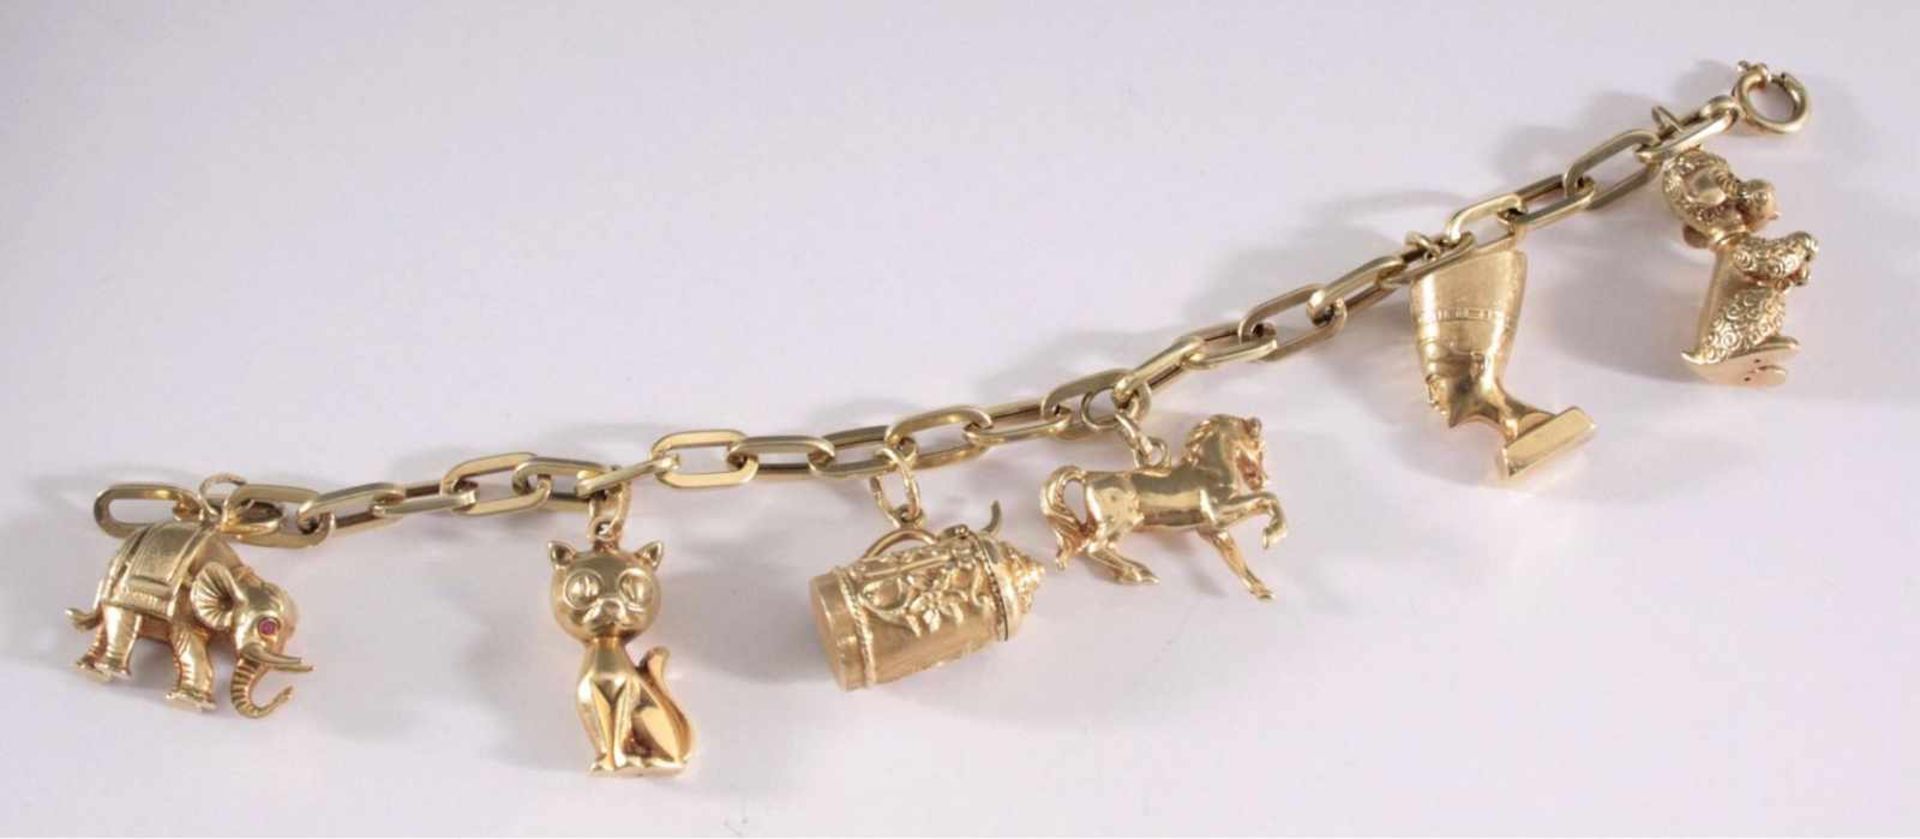 Bettelarmband aus 14 Karat GelbgoldKettenglieder-Armband mit 6 Anhänger u.a. Pudel, Elefant, - Bild 2 aus 2